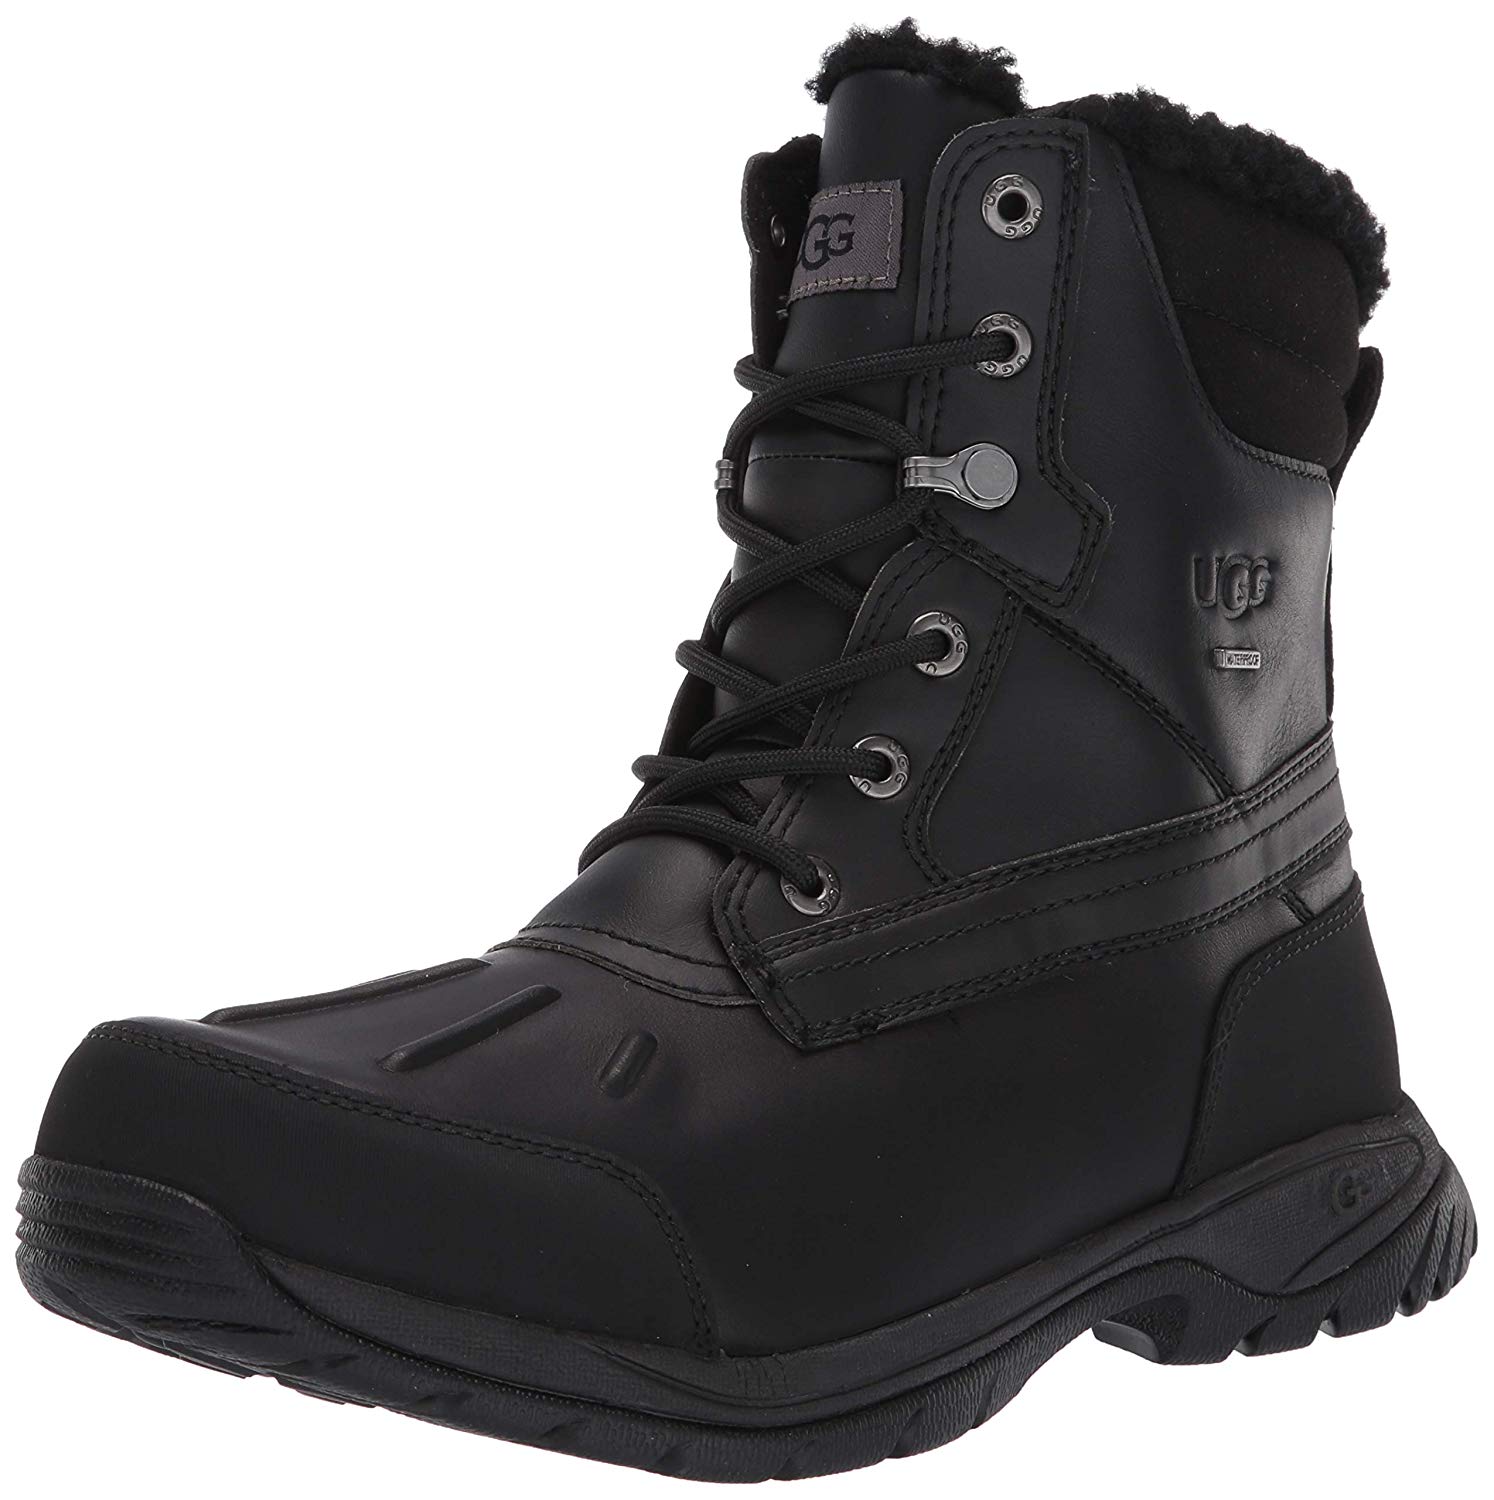 UGG Men's Felton Snow Boot, Black, Size 9.0 lVdI | eBay